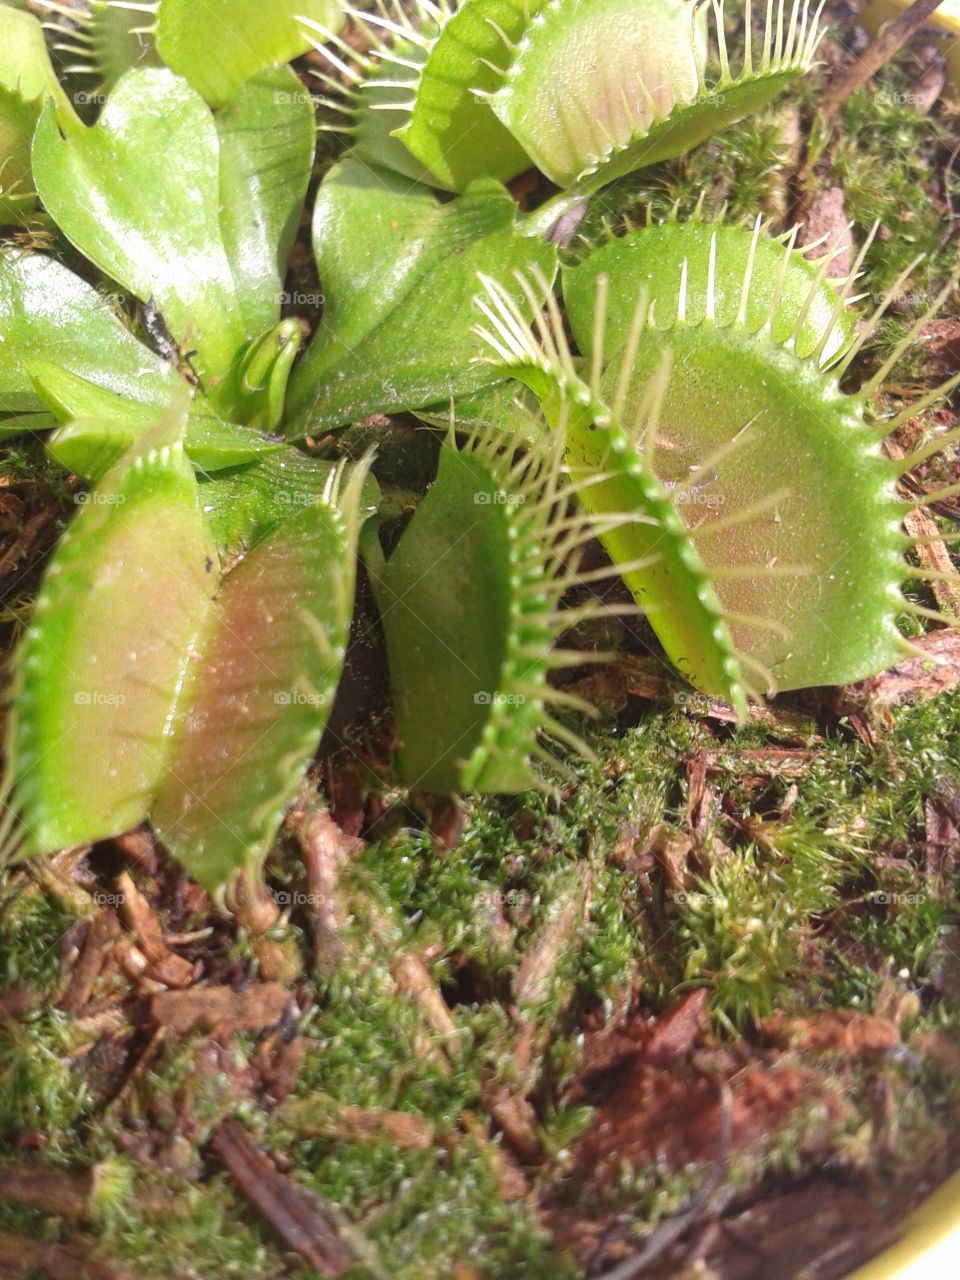 Dioneia muscipula or Venus flytrap